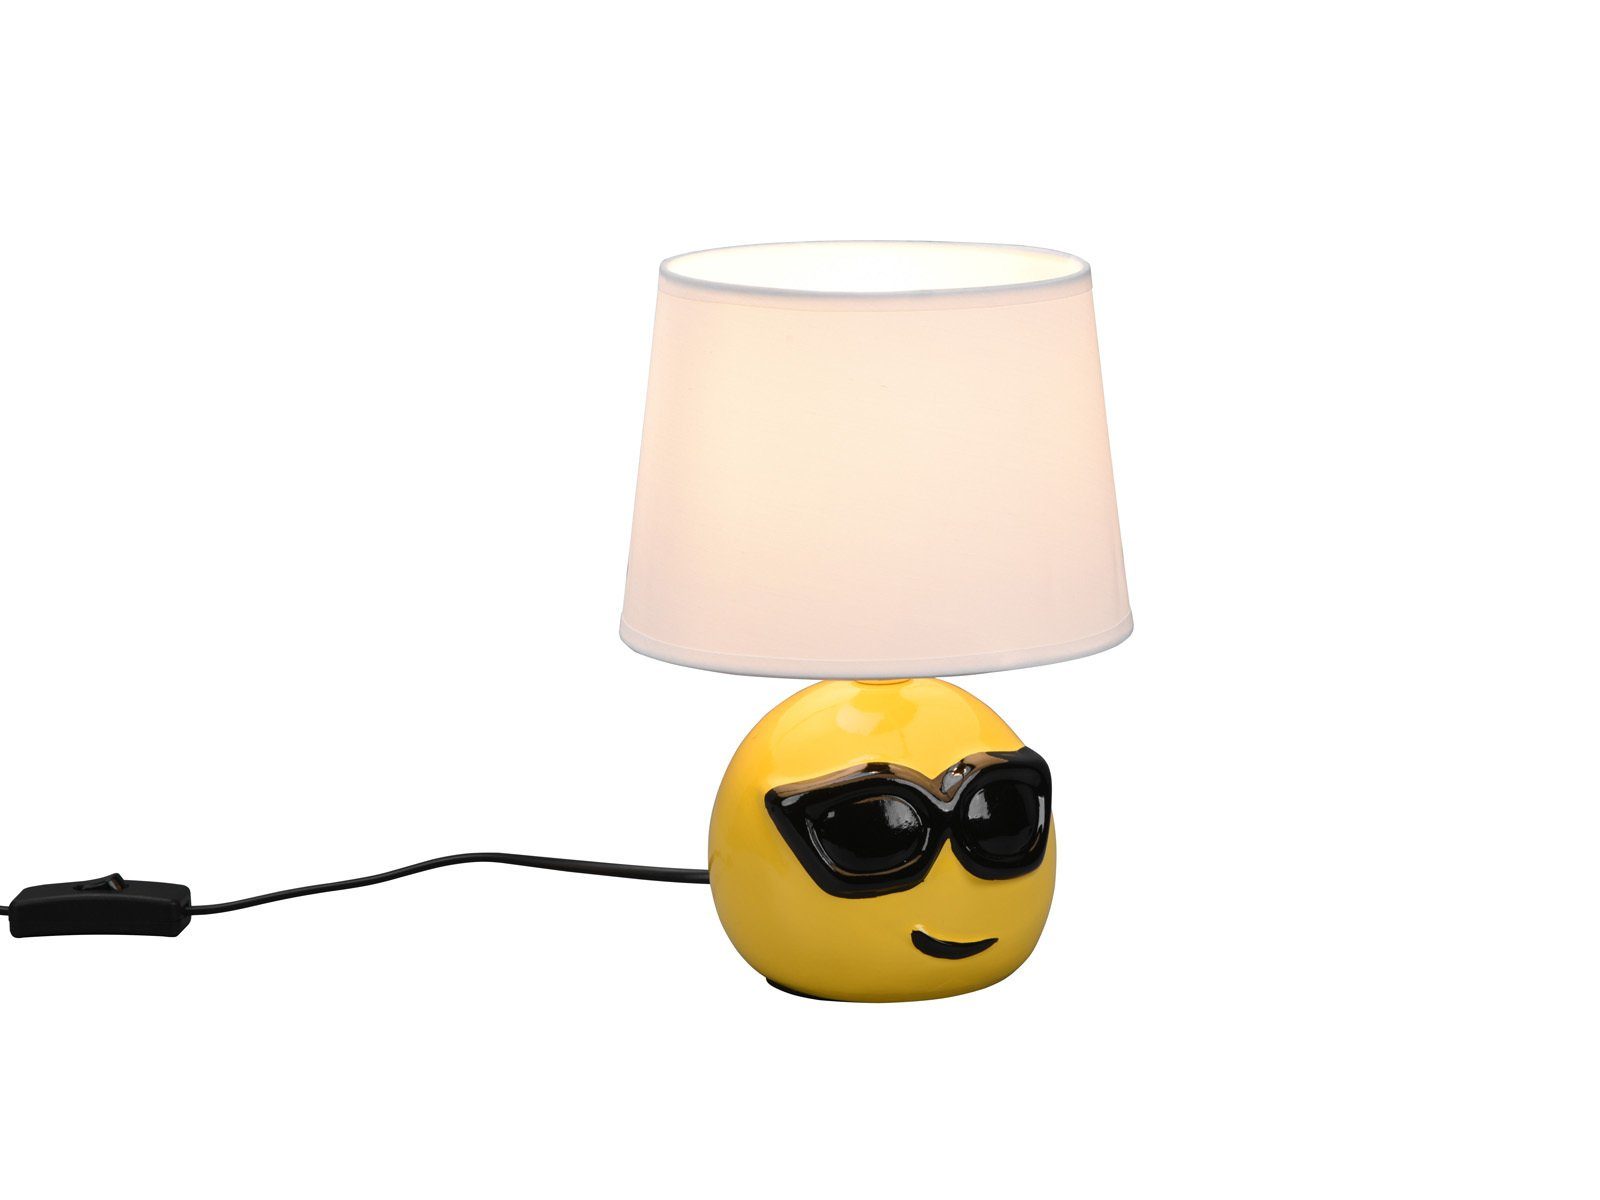 Nachttischlampe, 26cm cool-e LED Höhe Weiß, warmweiß, wechselbar, LED klein-e meineWunschleuchte dimmbar Gelb-Weiß ausgefallen Kinderzimmer-lampe